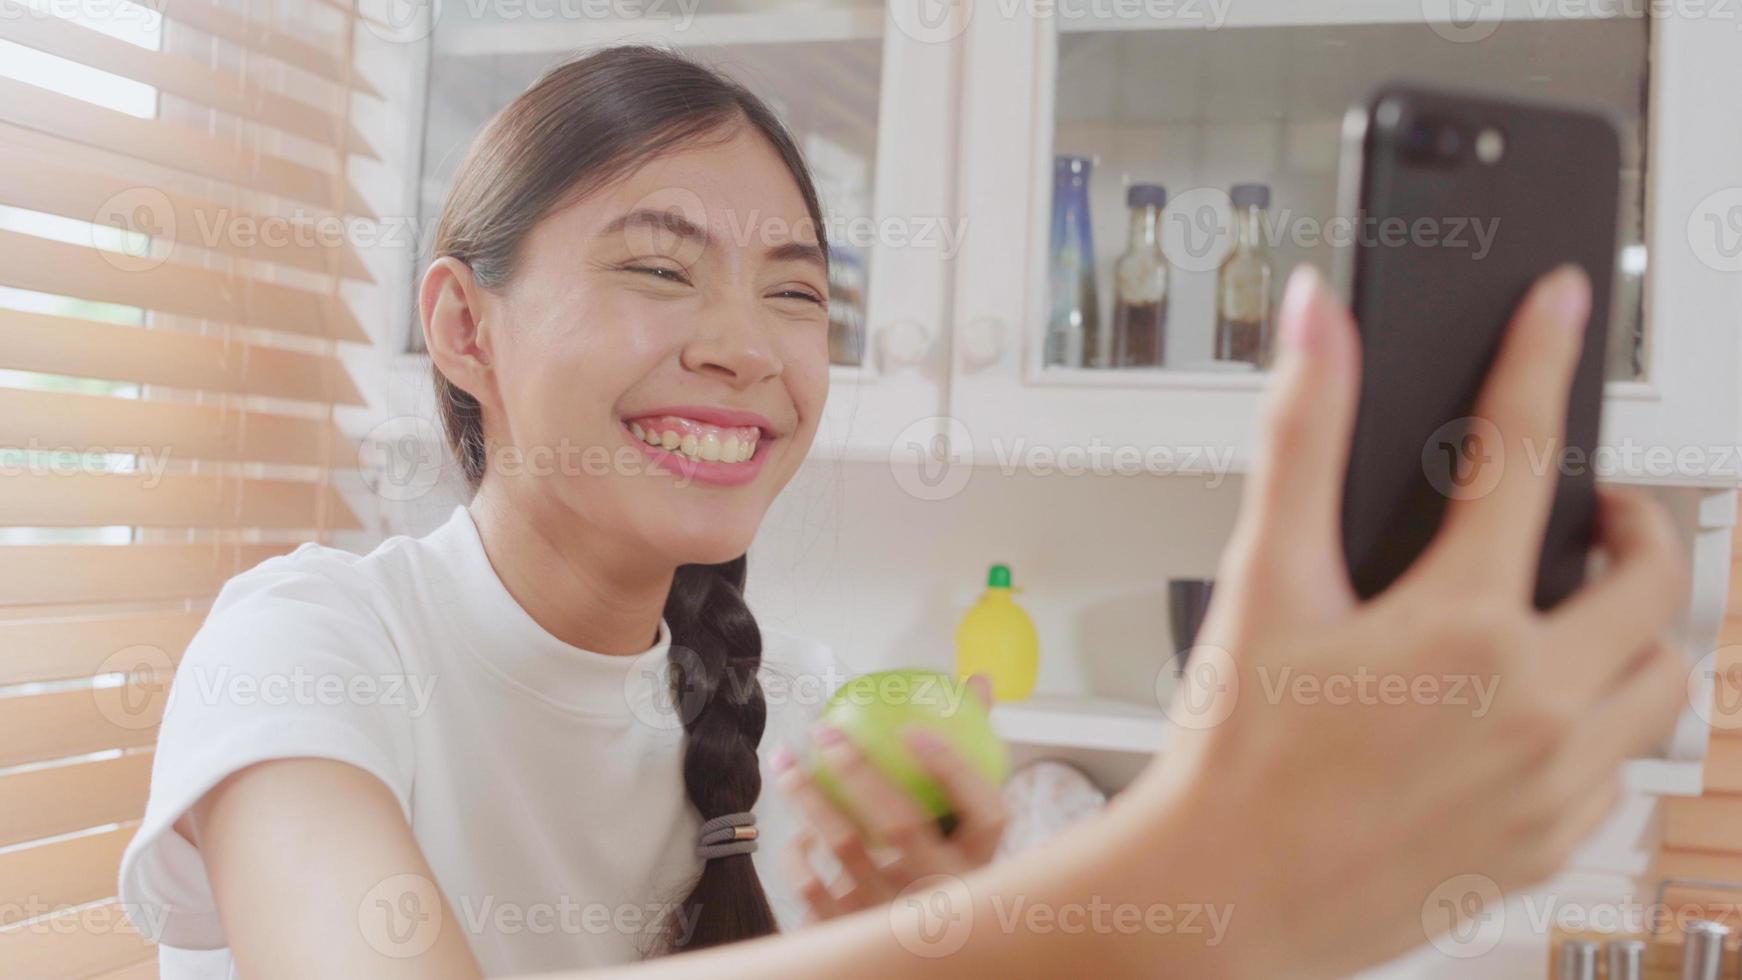 junge asiatische teenagerfrau vlog zu hause, frau, die smartphone verwendet, um vlog-video zu sozialen medien in der küche zu machen. Lifestyle-Frau entspannt sich am Morgen zu Hause Konzept. foto